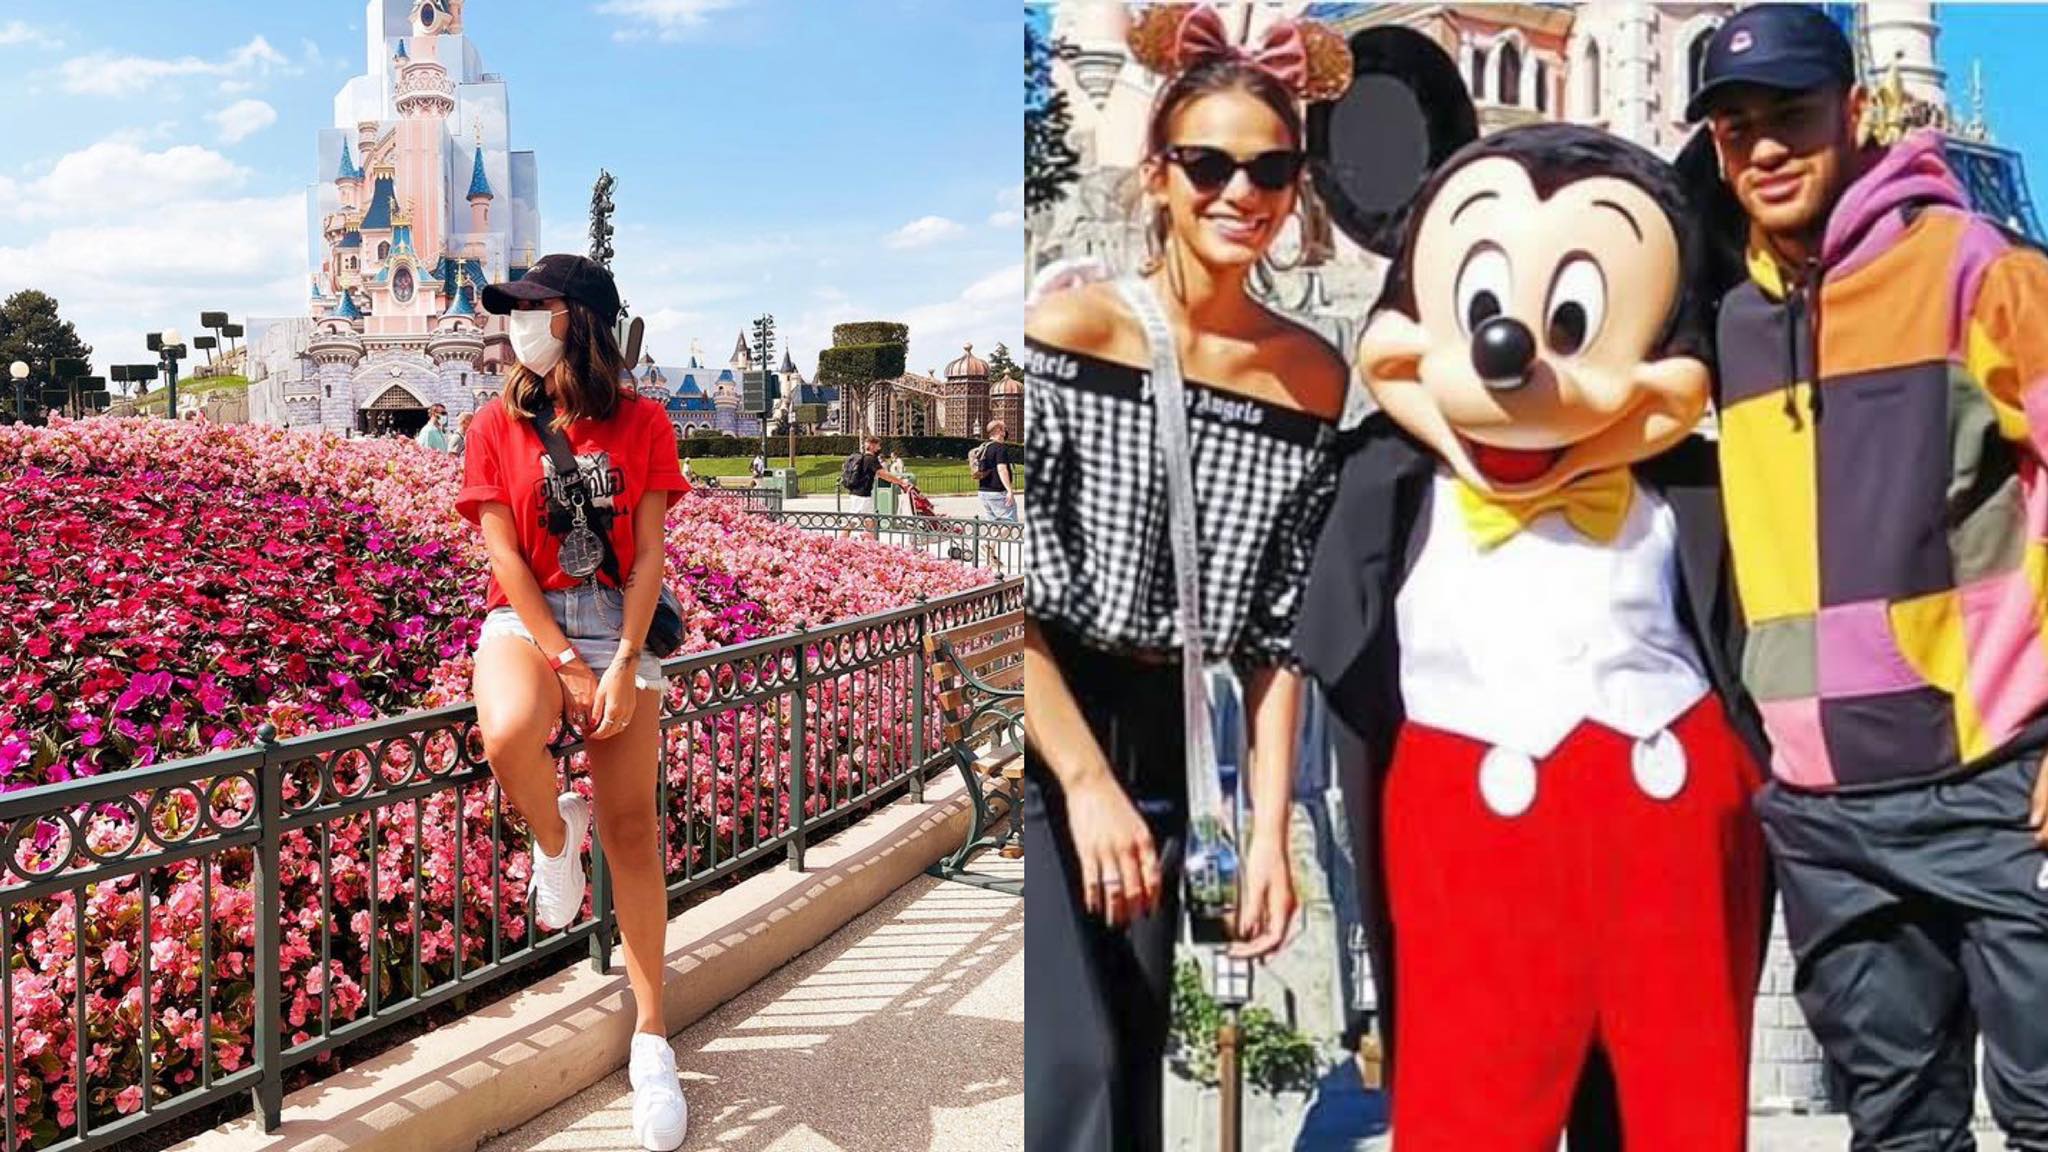 Neymar também levou Bianca Biancardi para passear na Disney de Paris, bem como fez o mesmo passeio com Marquezine (quando namoravam). Fonte: Montagem/ Fashion Bubbles